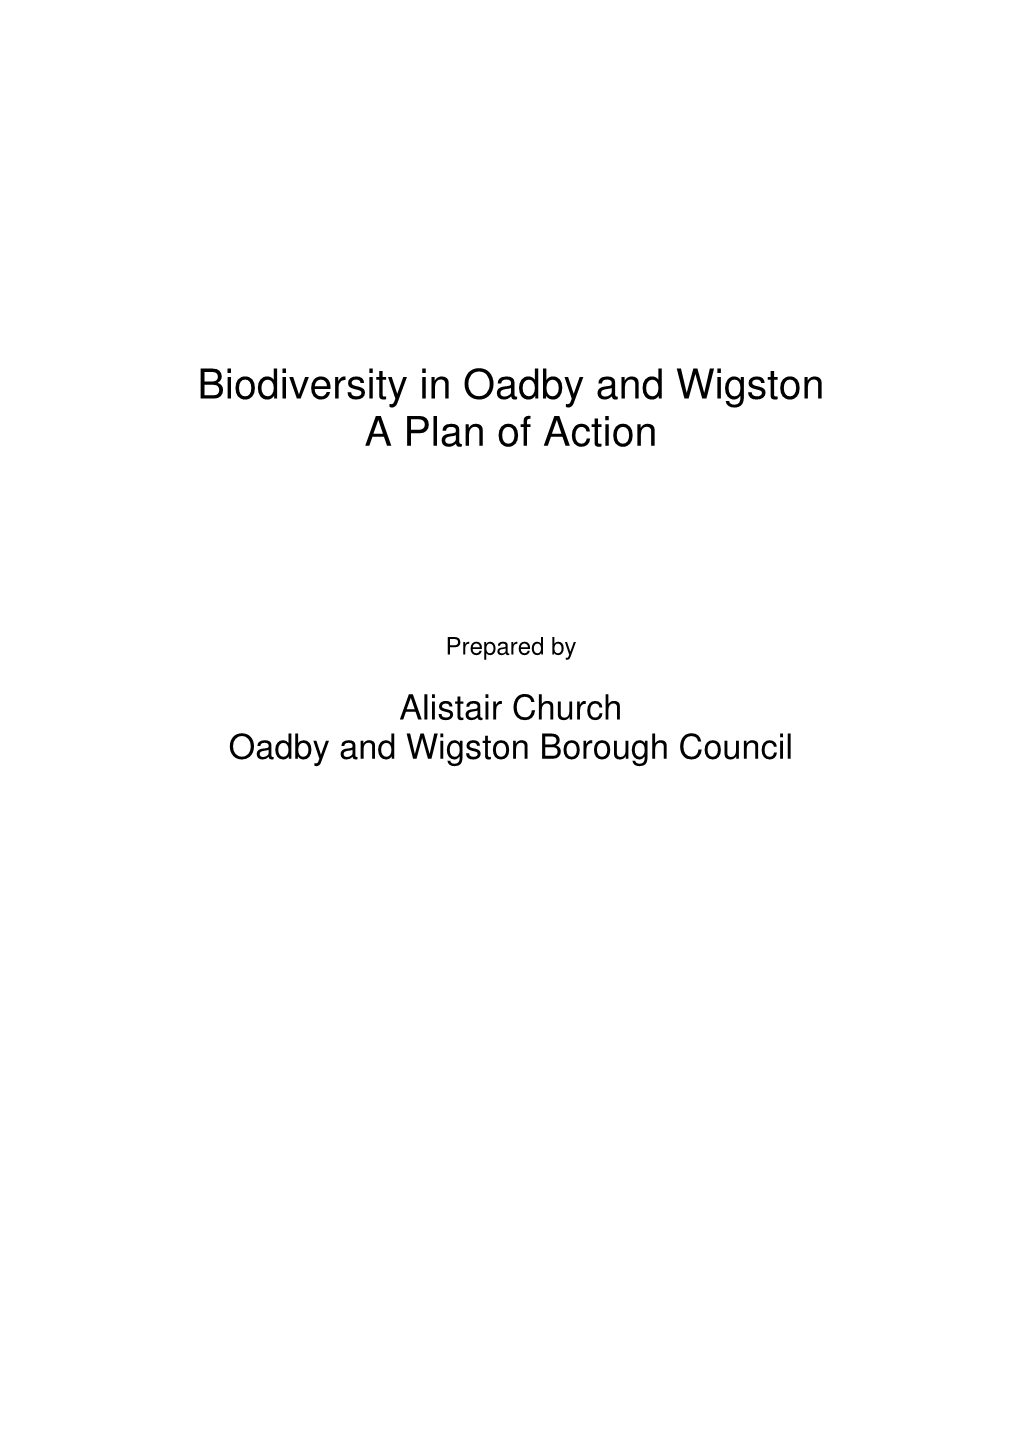 Cd11-01 Biodiversity Action Plan